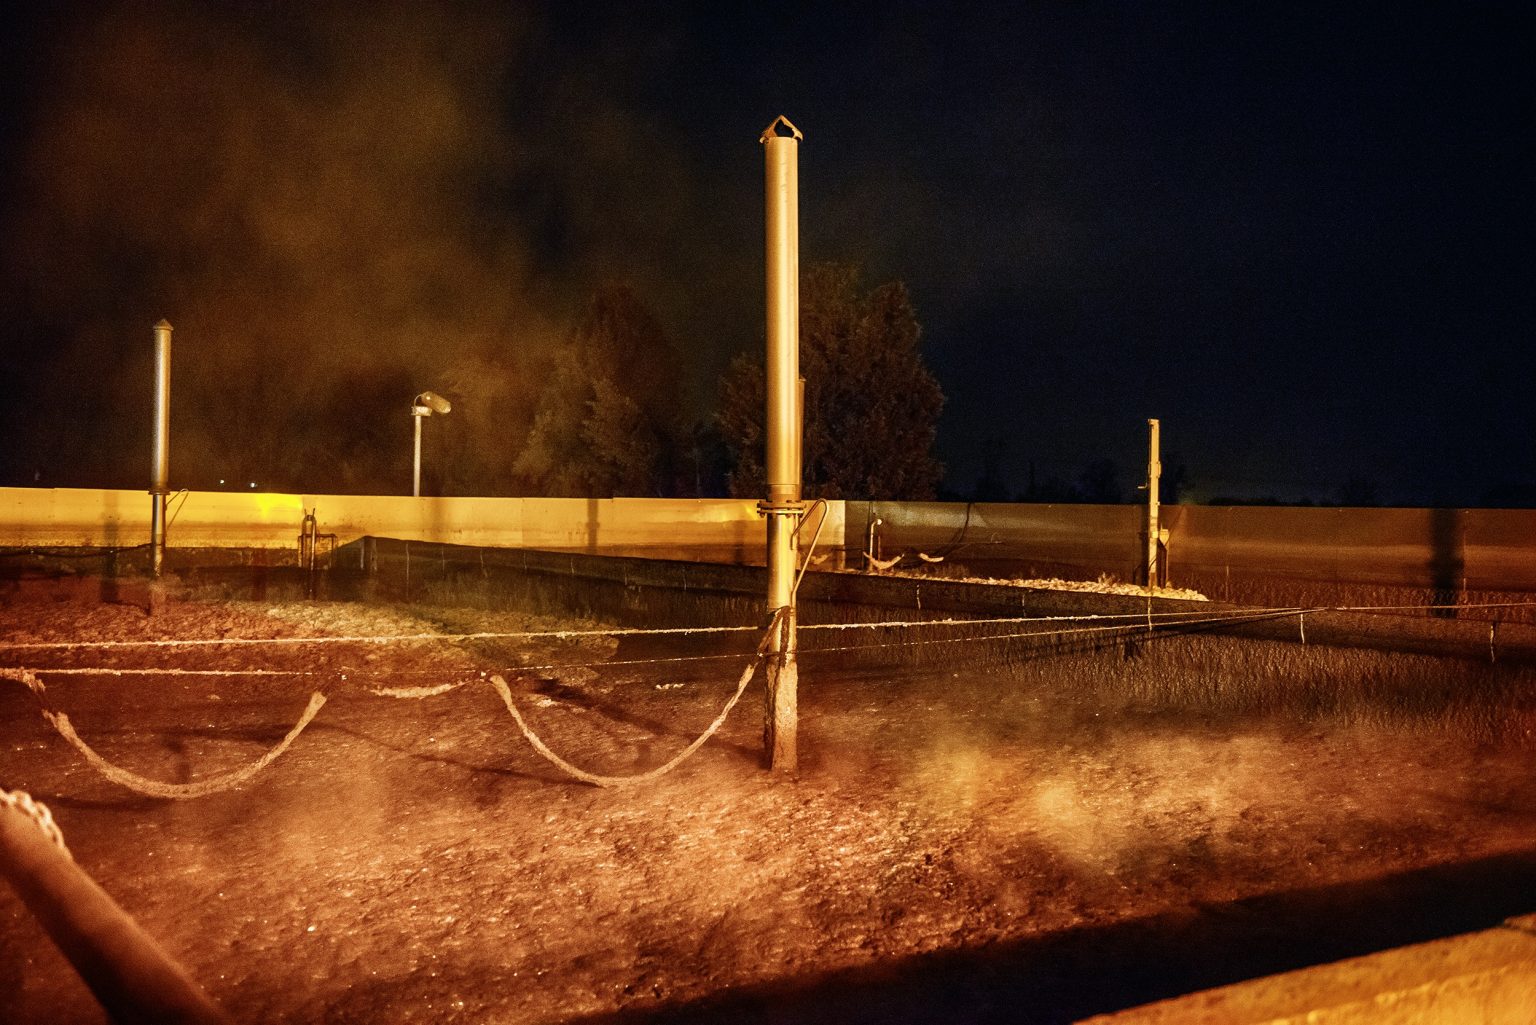 View of a slurry tank of a pig farm. Emilia Romagna. January 2017.

Veduta di una vasca di raccoglimento liquami di un allevamento di maiali. Emilia Romagna. Gennaio 2017.